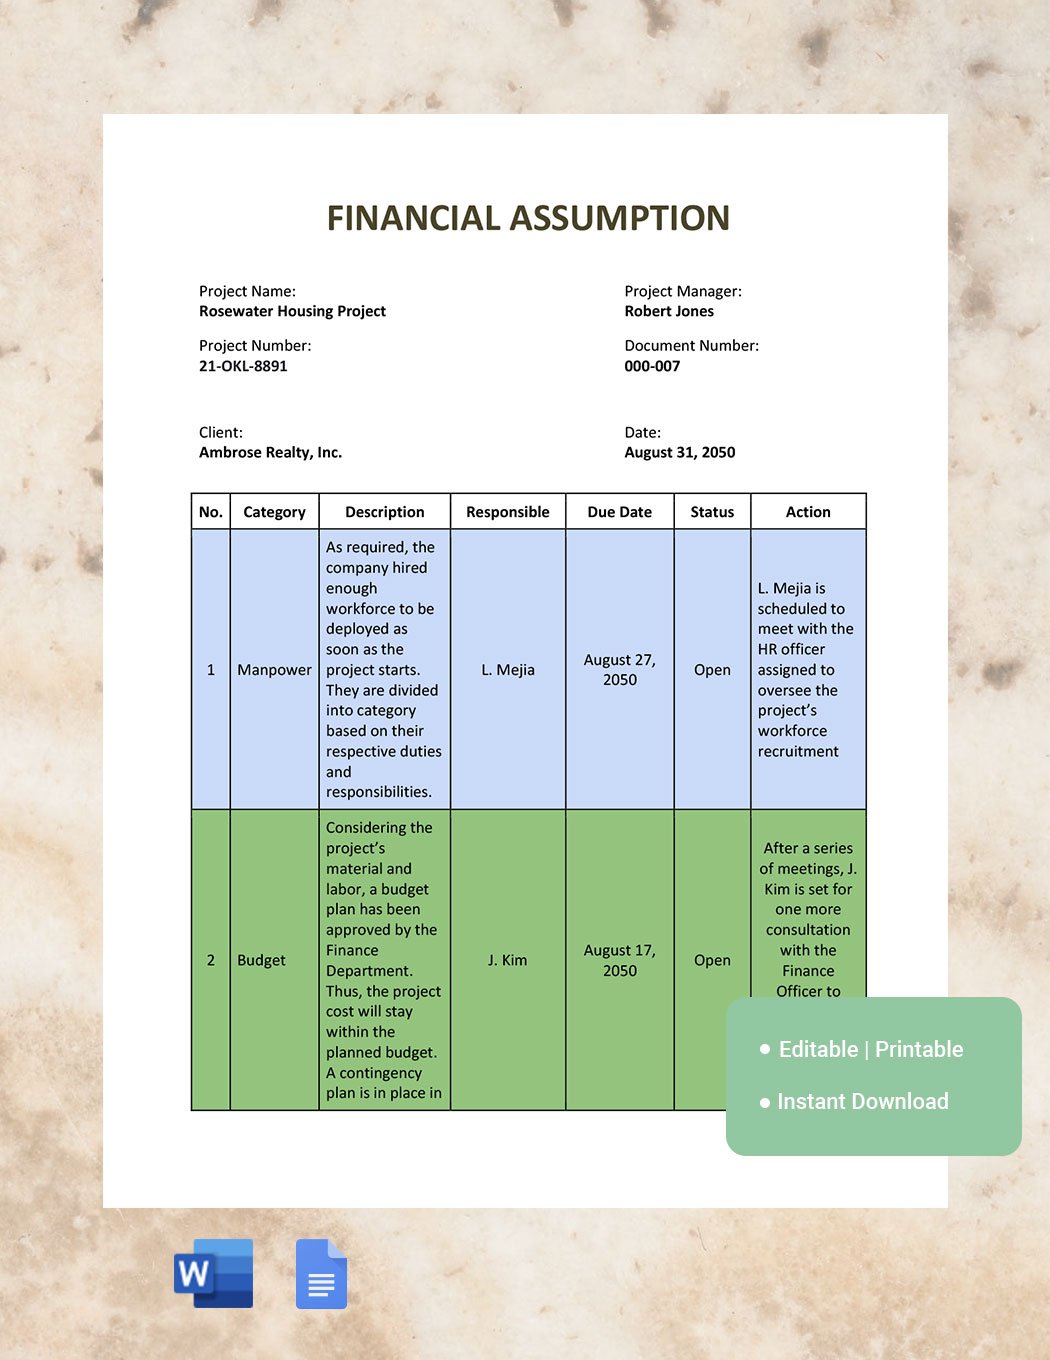 Financial Assumption Template Izzp6 